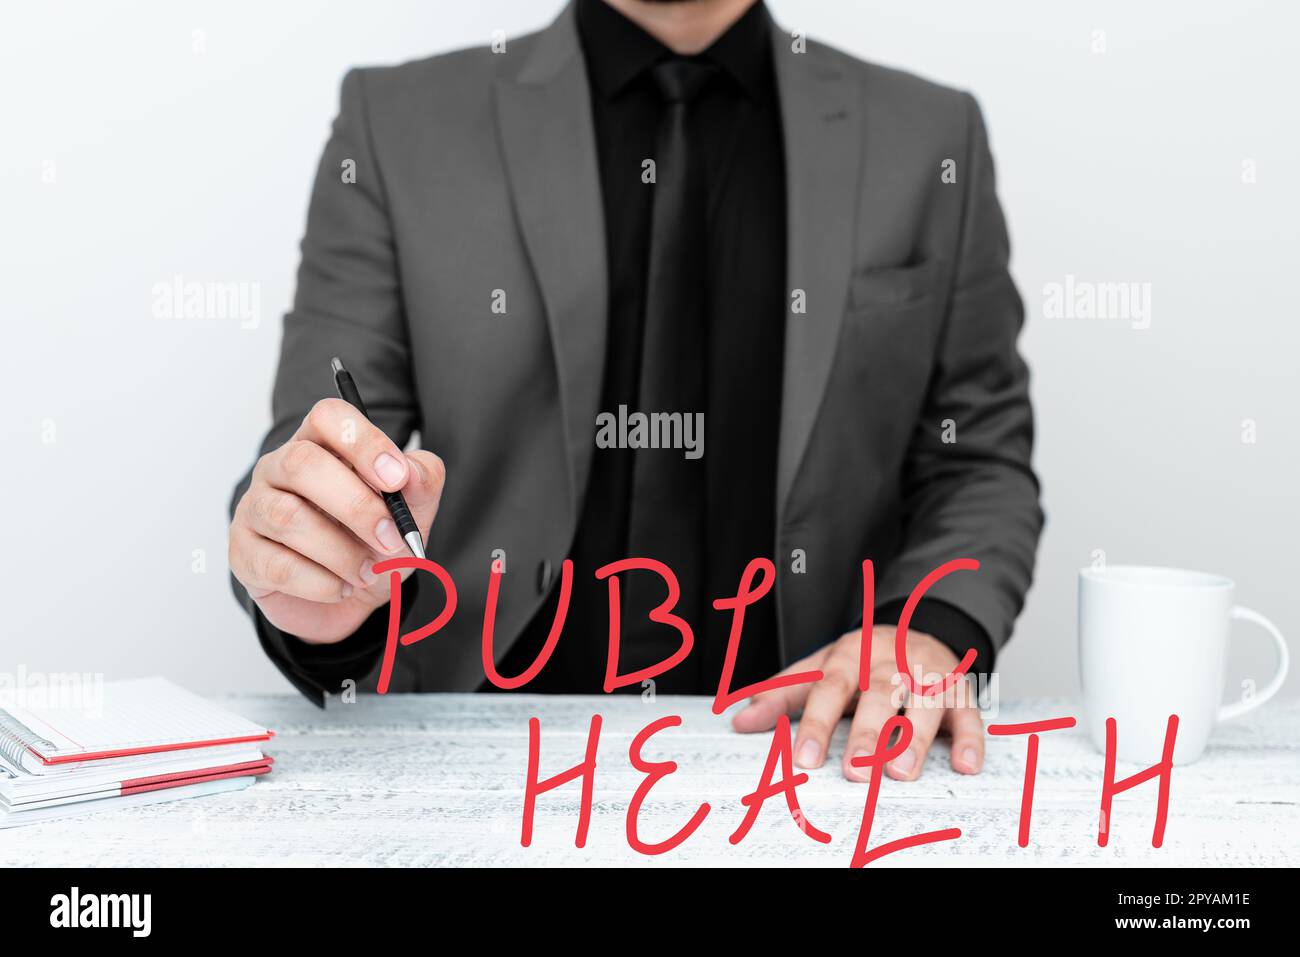 Inspiration zeigt Zeichen Public Health. Wort für die Förderung einer gesunden Lebensweise für die Gemeinschaft und ihre Menschen Stockfoto